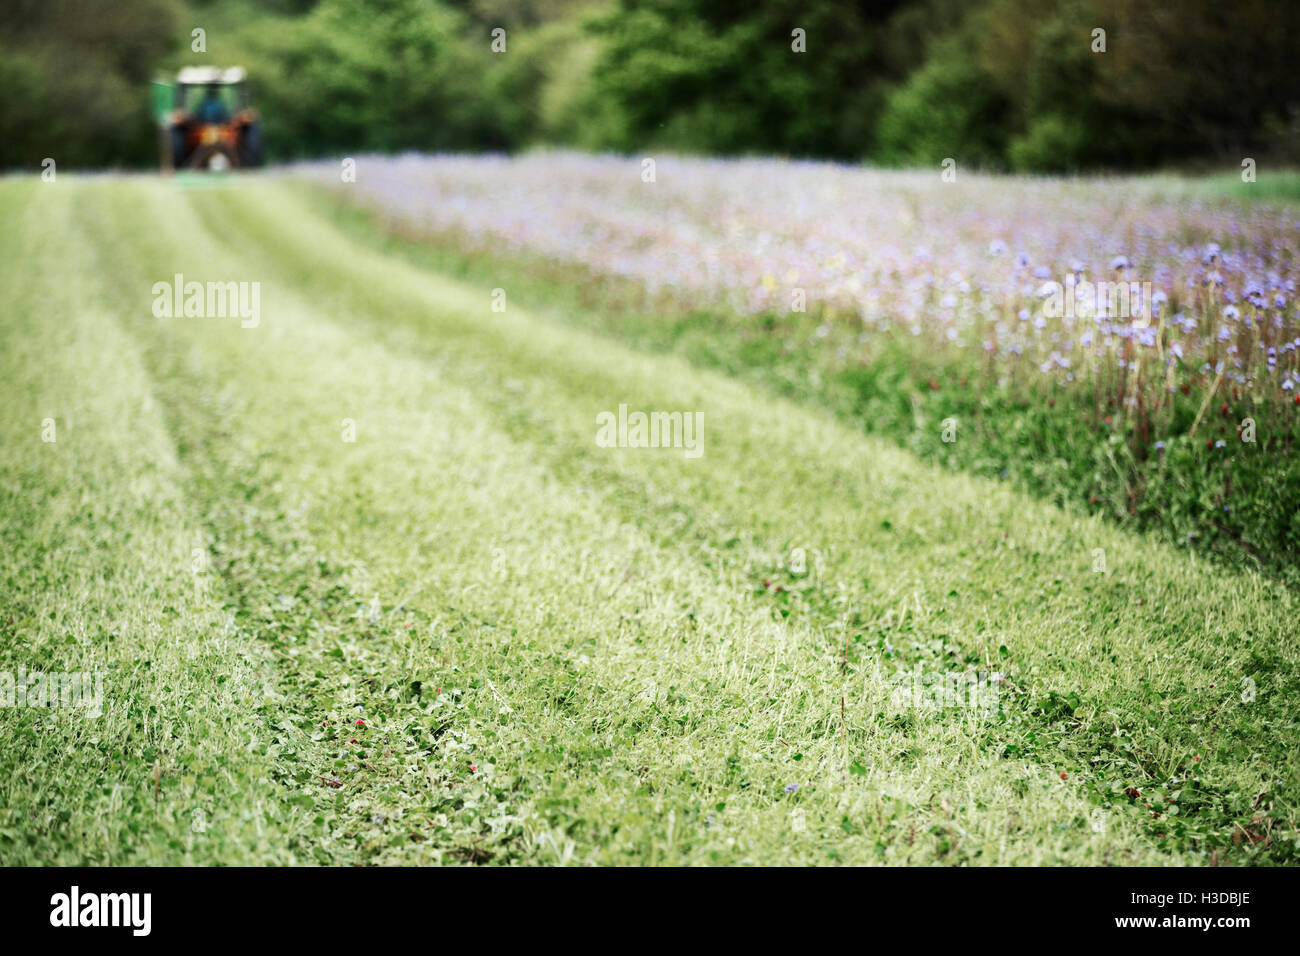 Un champ d'herbe verte, de plus en plus, et une récolte de bleuets bleu et un wild flower meadow. Le tracteur dans la distance. Banque D'Images